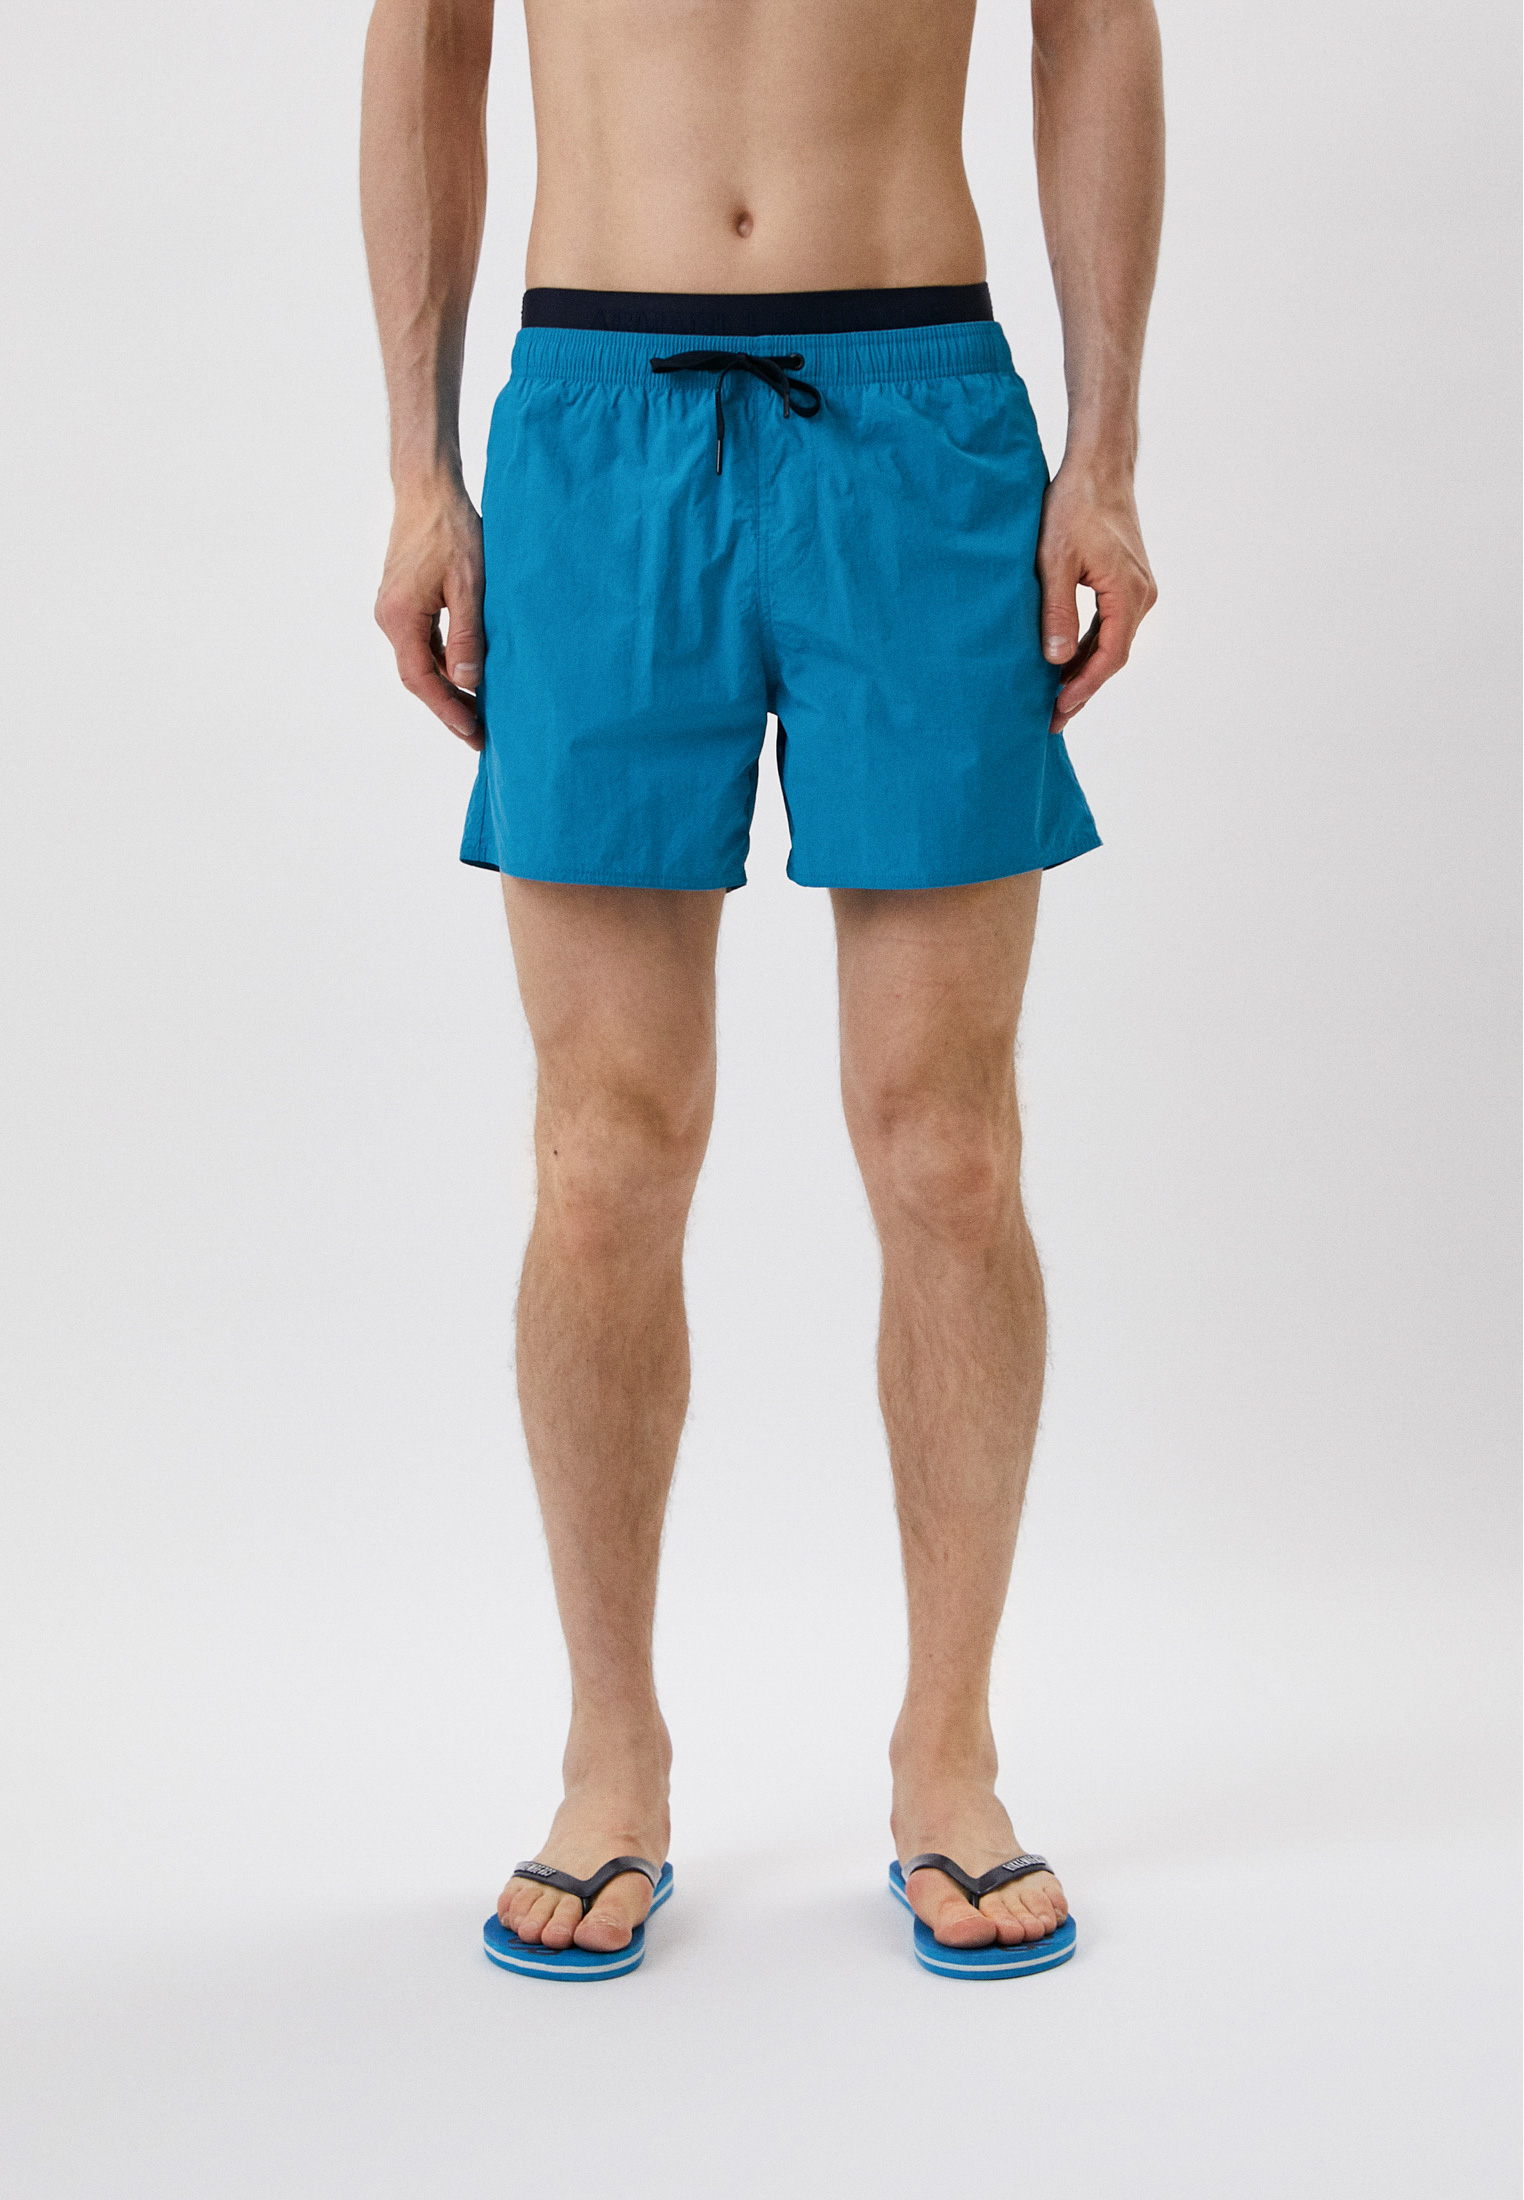 Мужские шорты для плавания Armani Exchange 953020 2R610: изображение 1